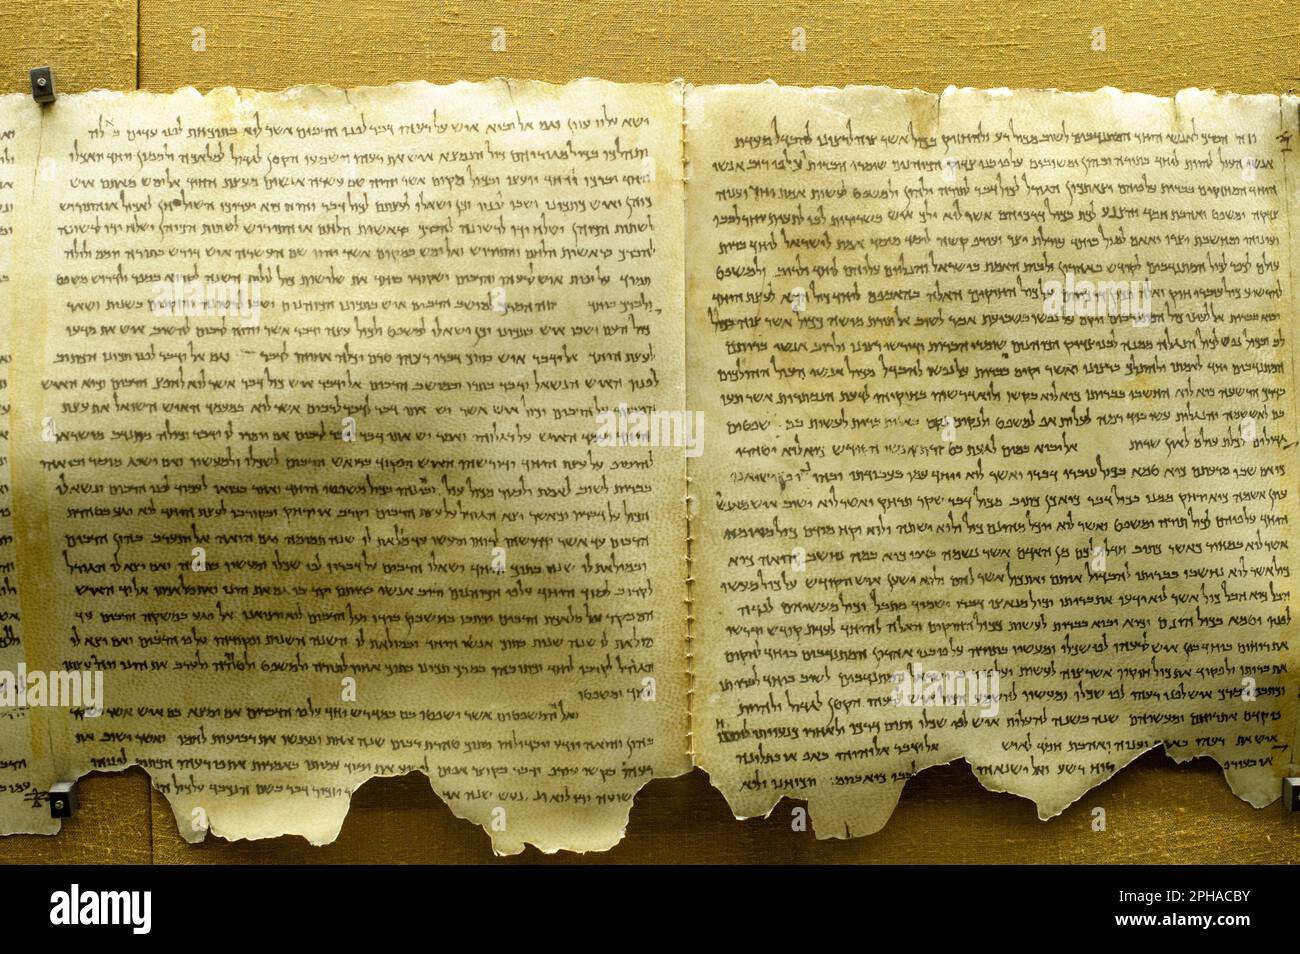 The Dead Sea Scrolls (Qumran Caves Scrolls): Manuscrits religieux juifs,3rd c. BCE-1st c. ce, trouvés dans les grottes de Qumran sur la rive nord de la mer Morte Banque D'Images